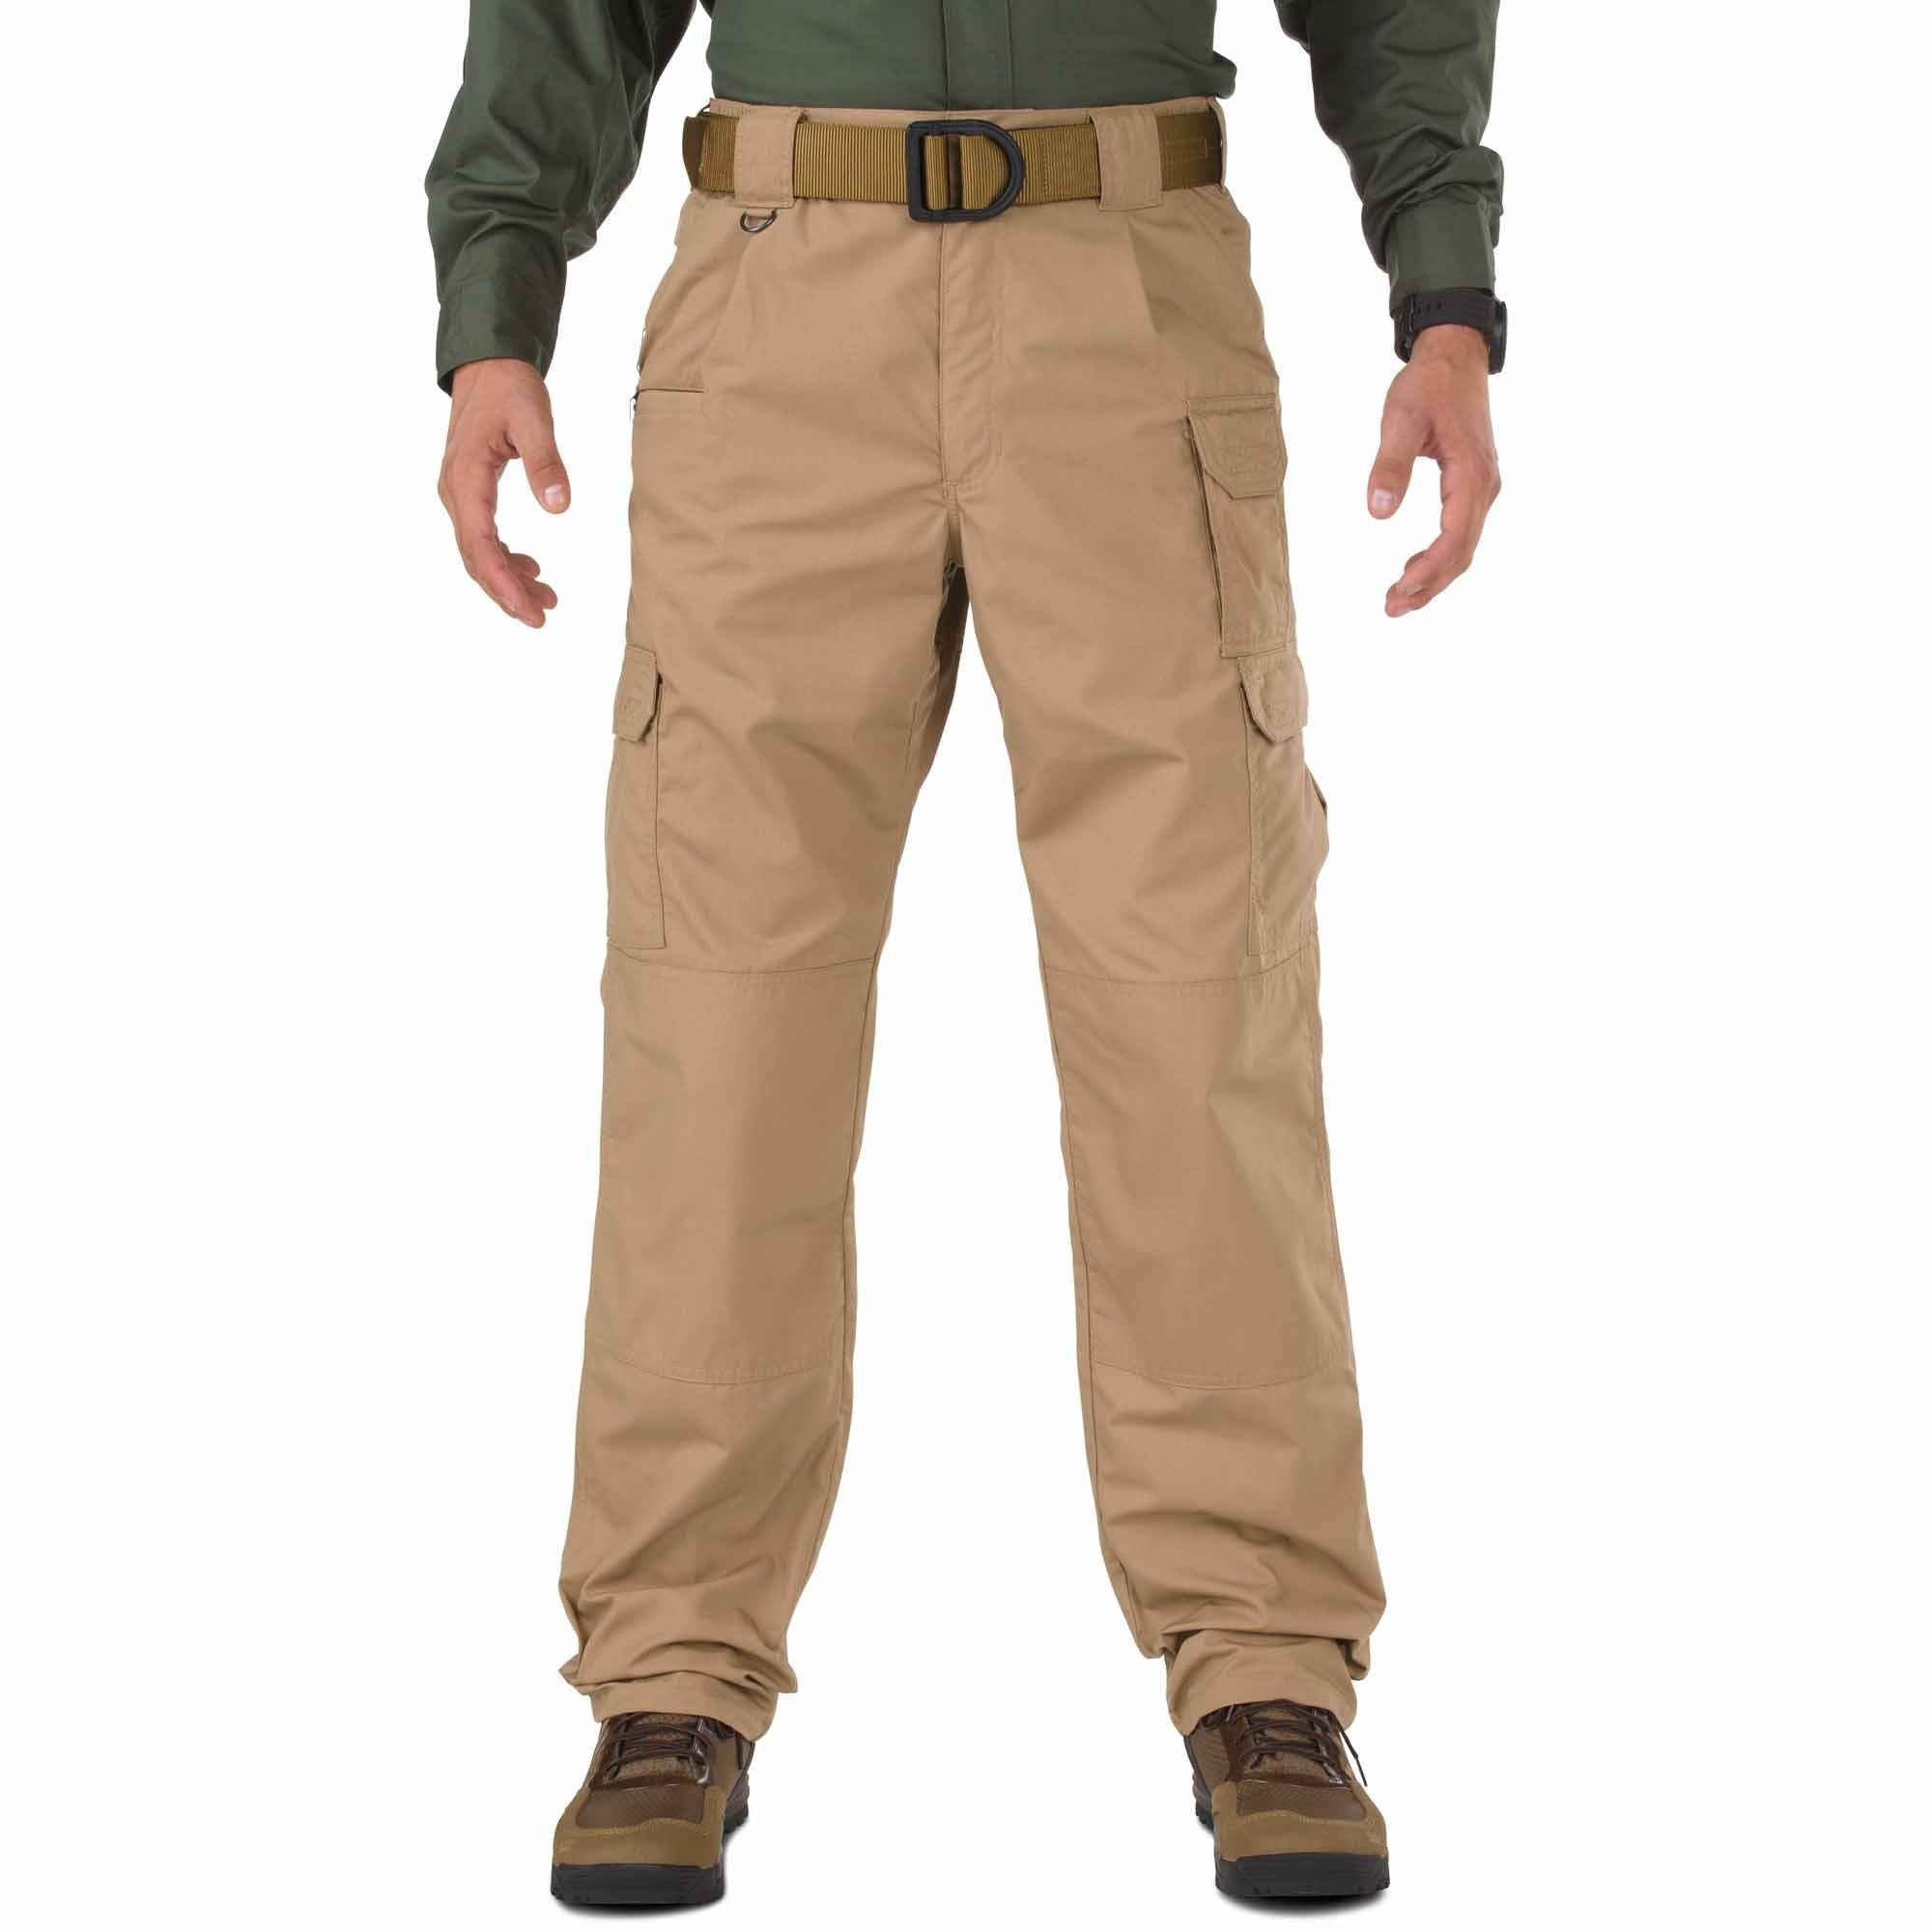 5.11 Tactical Taclite Pro Pants - Coyote Pants 5.11 Tactical 28 30 Tactical Gear Supplier Tactical Distributors Australia